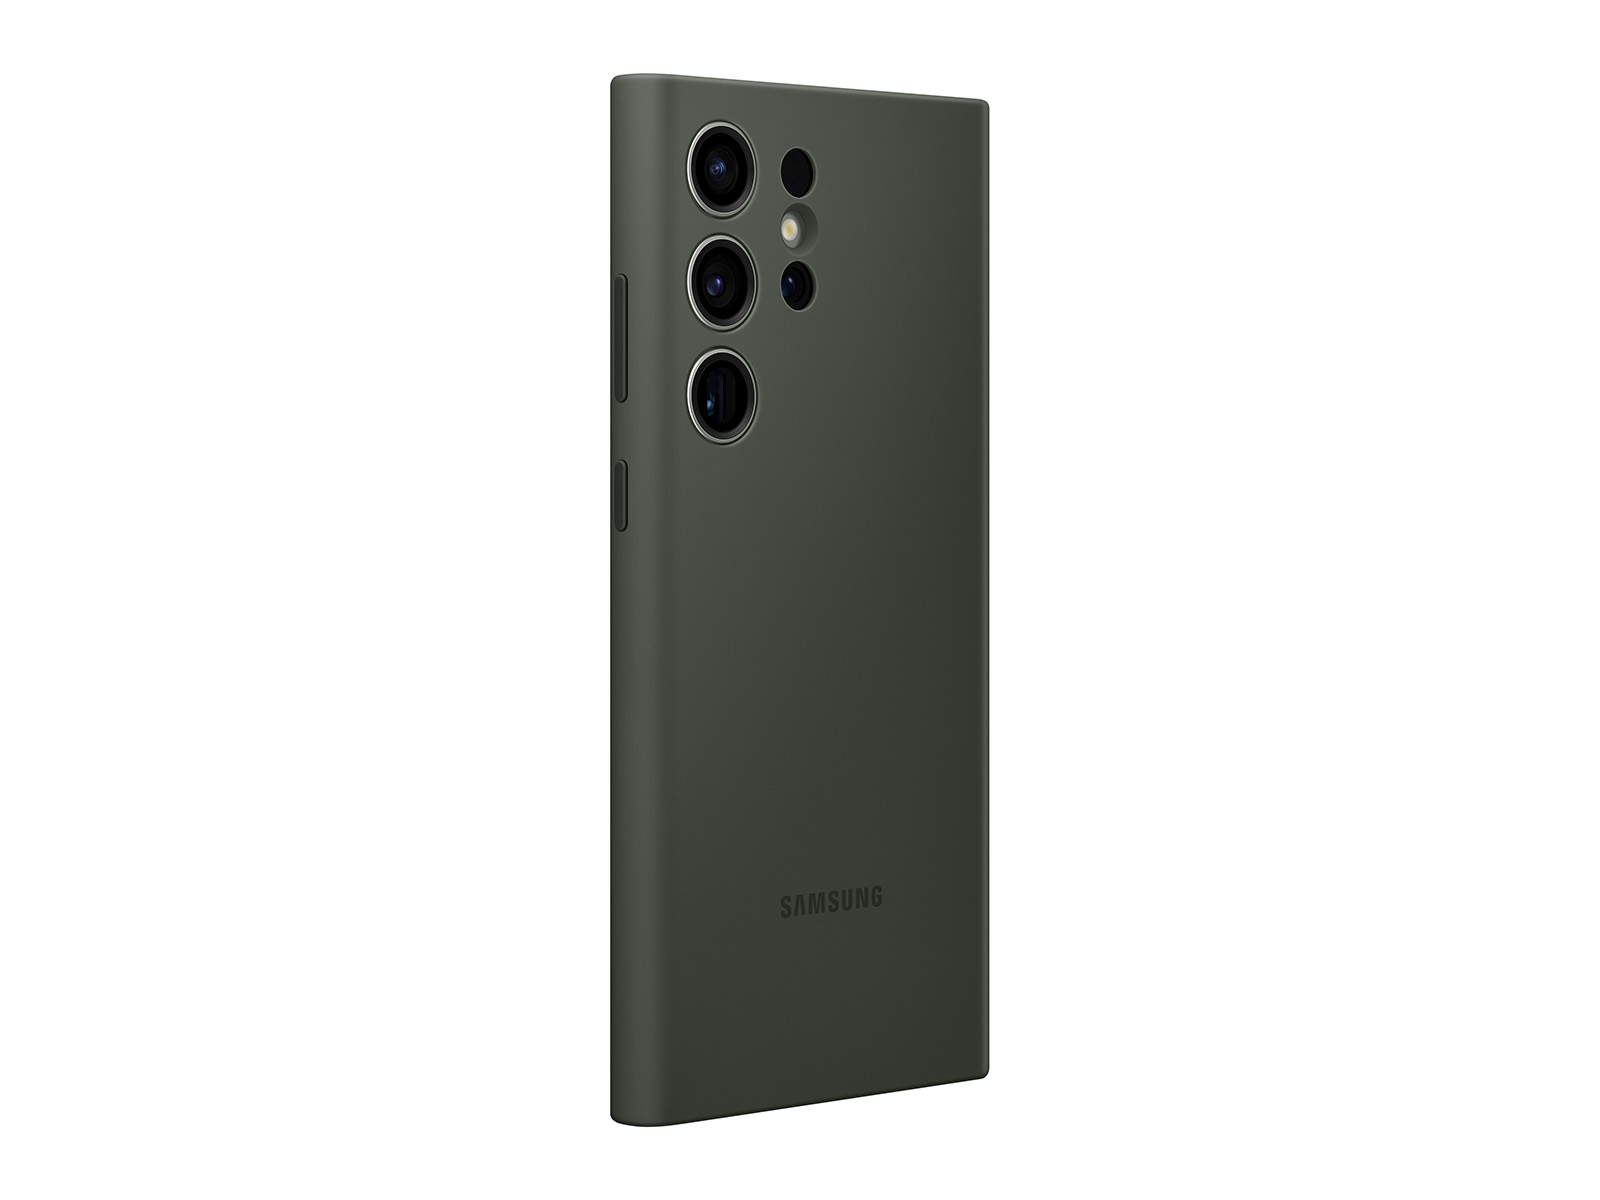 Samsung Galaxy S23 funda silicona (verde oscuro) 